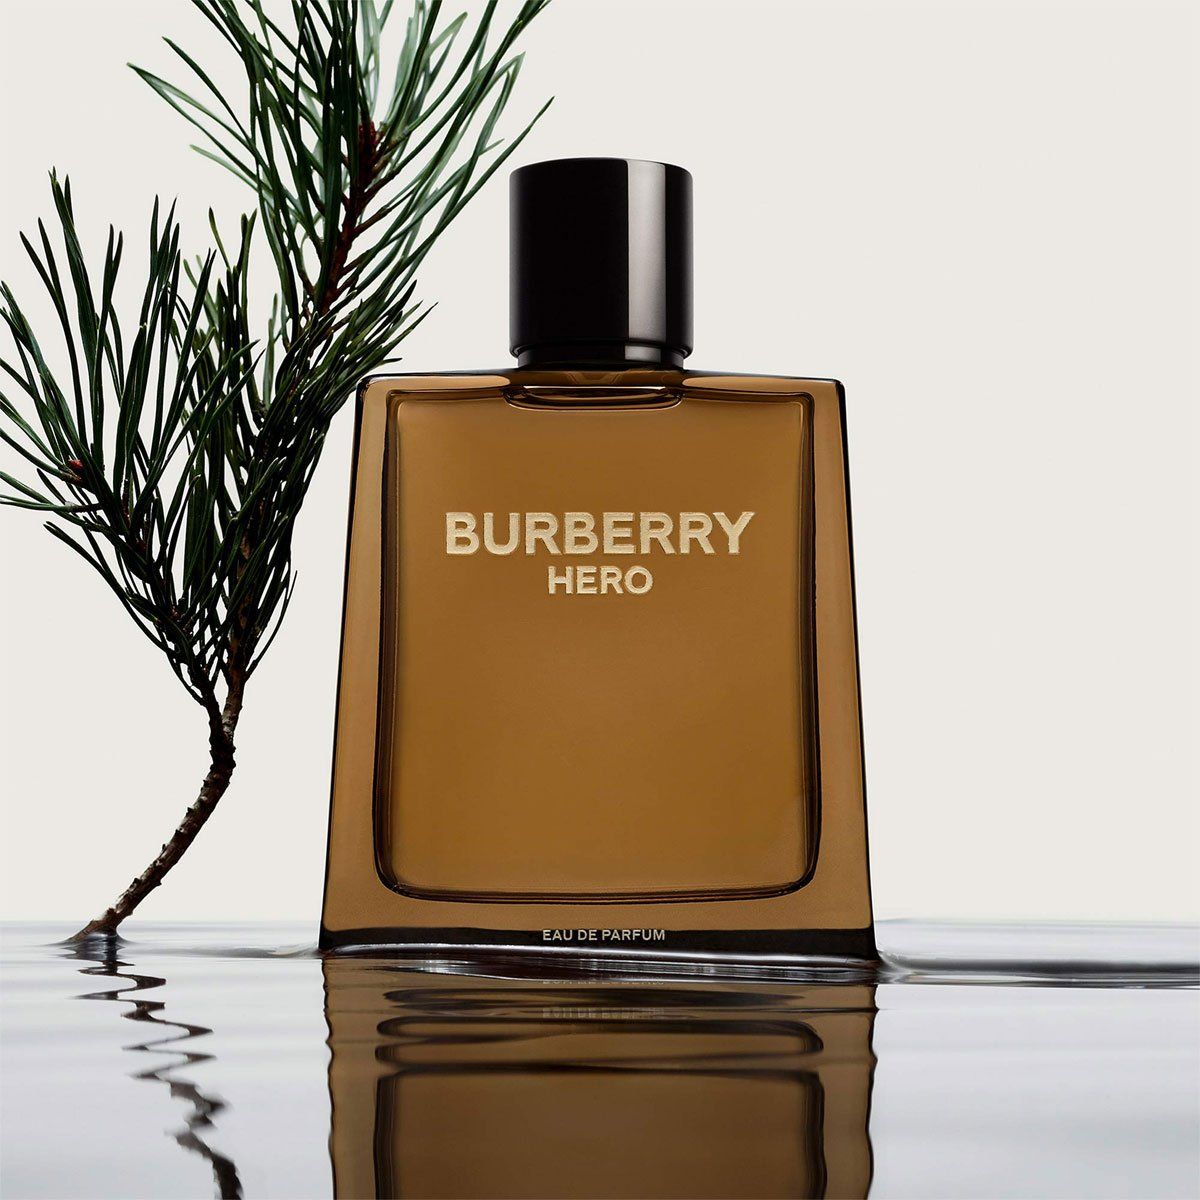  Burberry Hero Eau de Parfum 